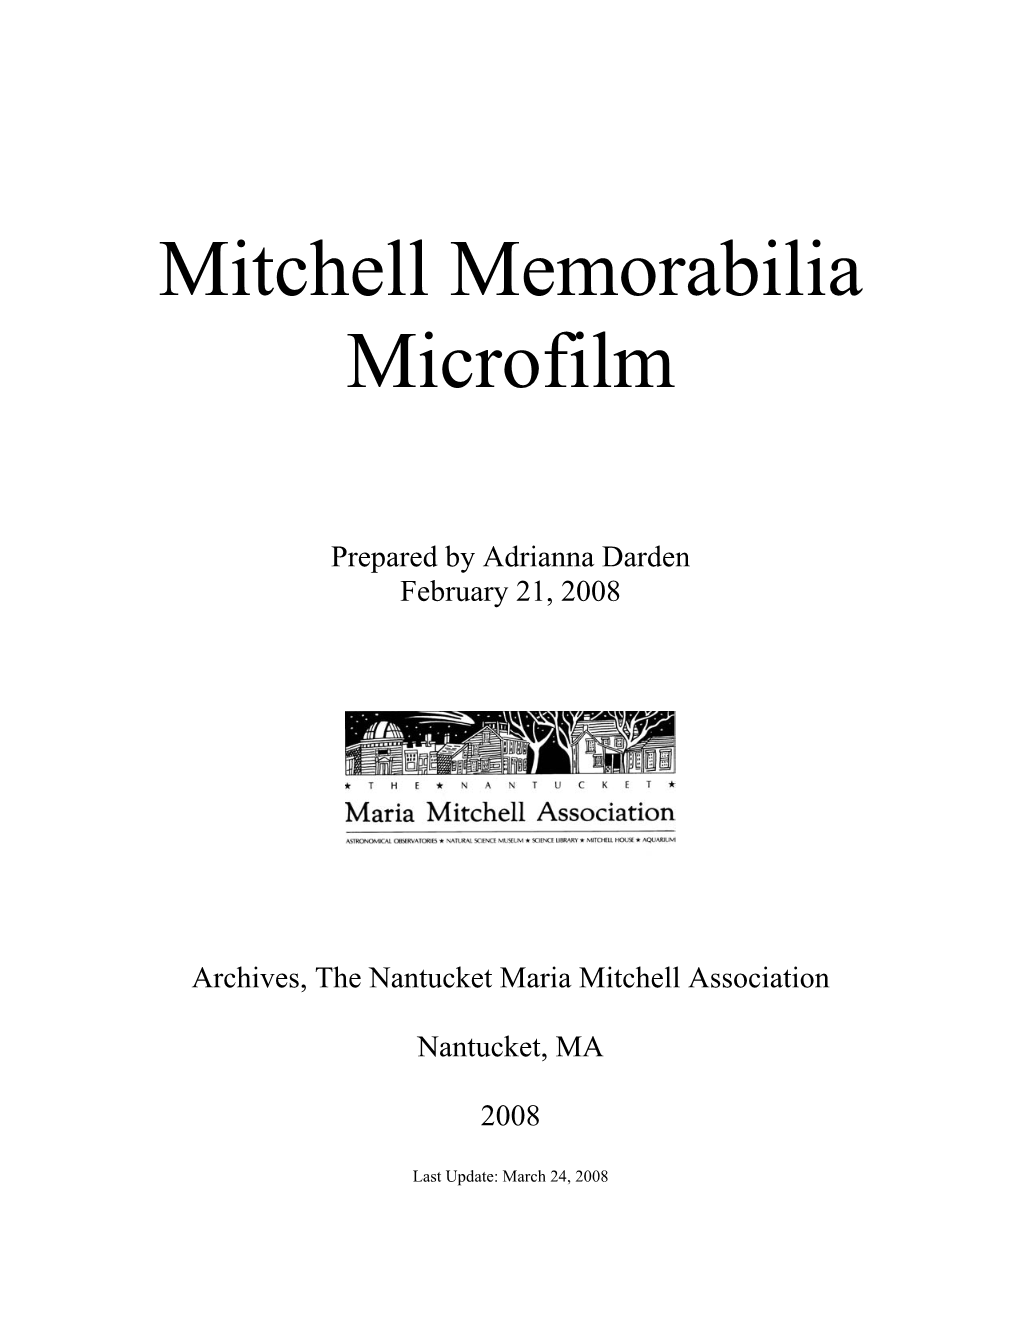 Mitchell Memorabilia Microfilm